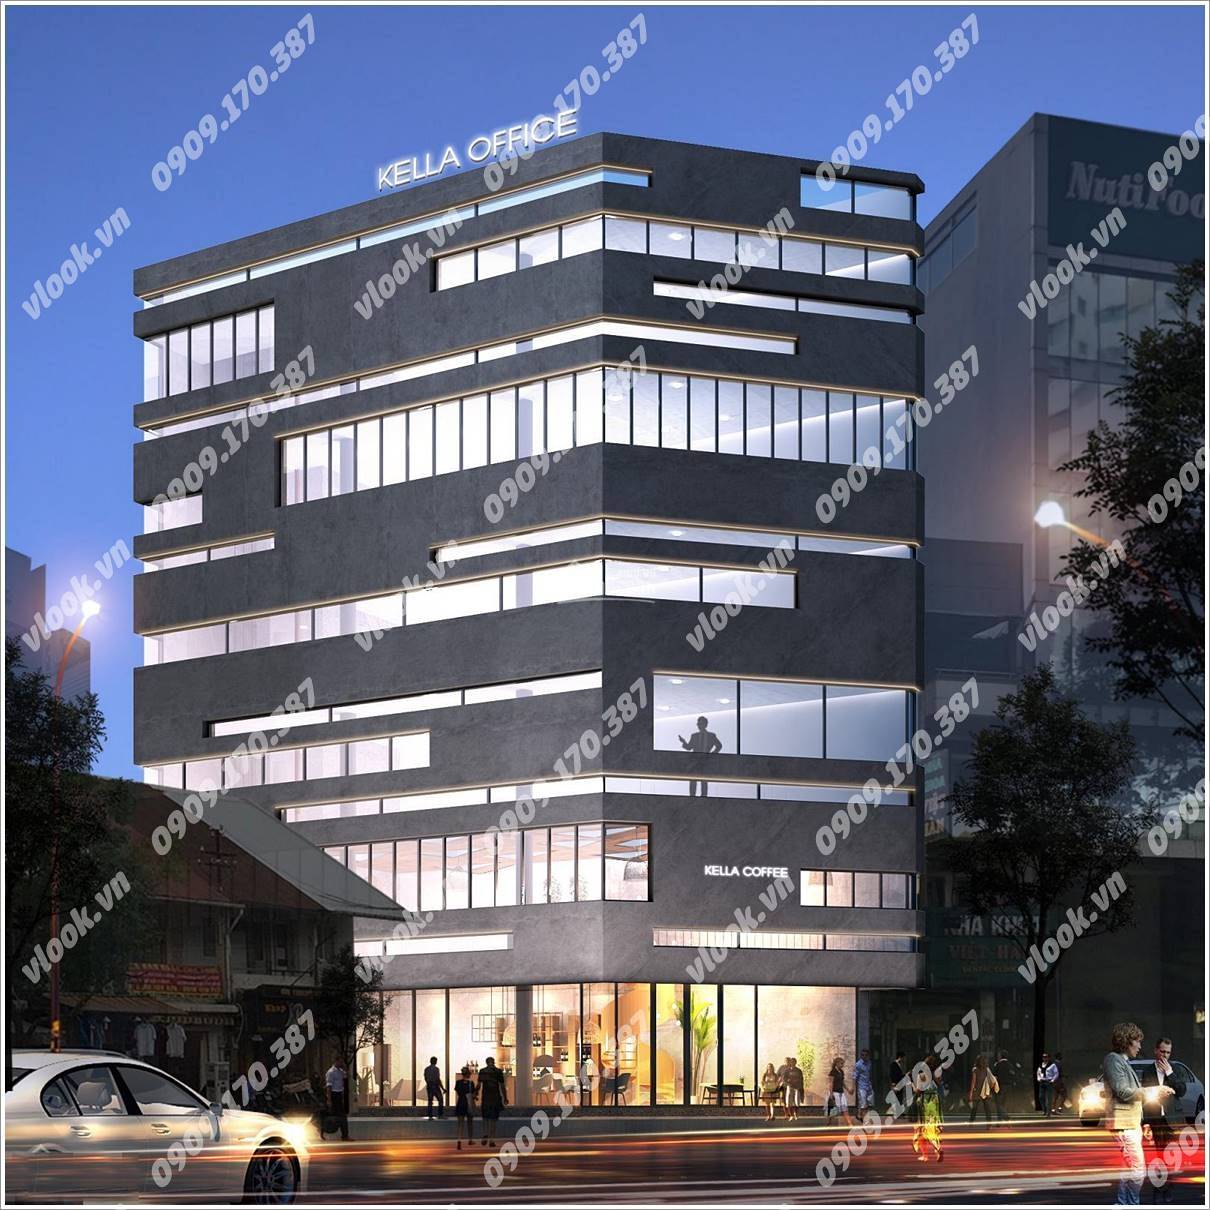 Cao ốc cho thuê văn phòng tòa nhà Kelly Office Hoàng Diệu, Quận 4, TPHCM - vlook.vn